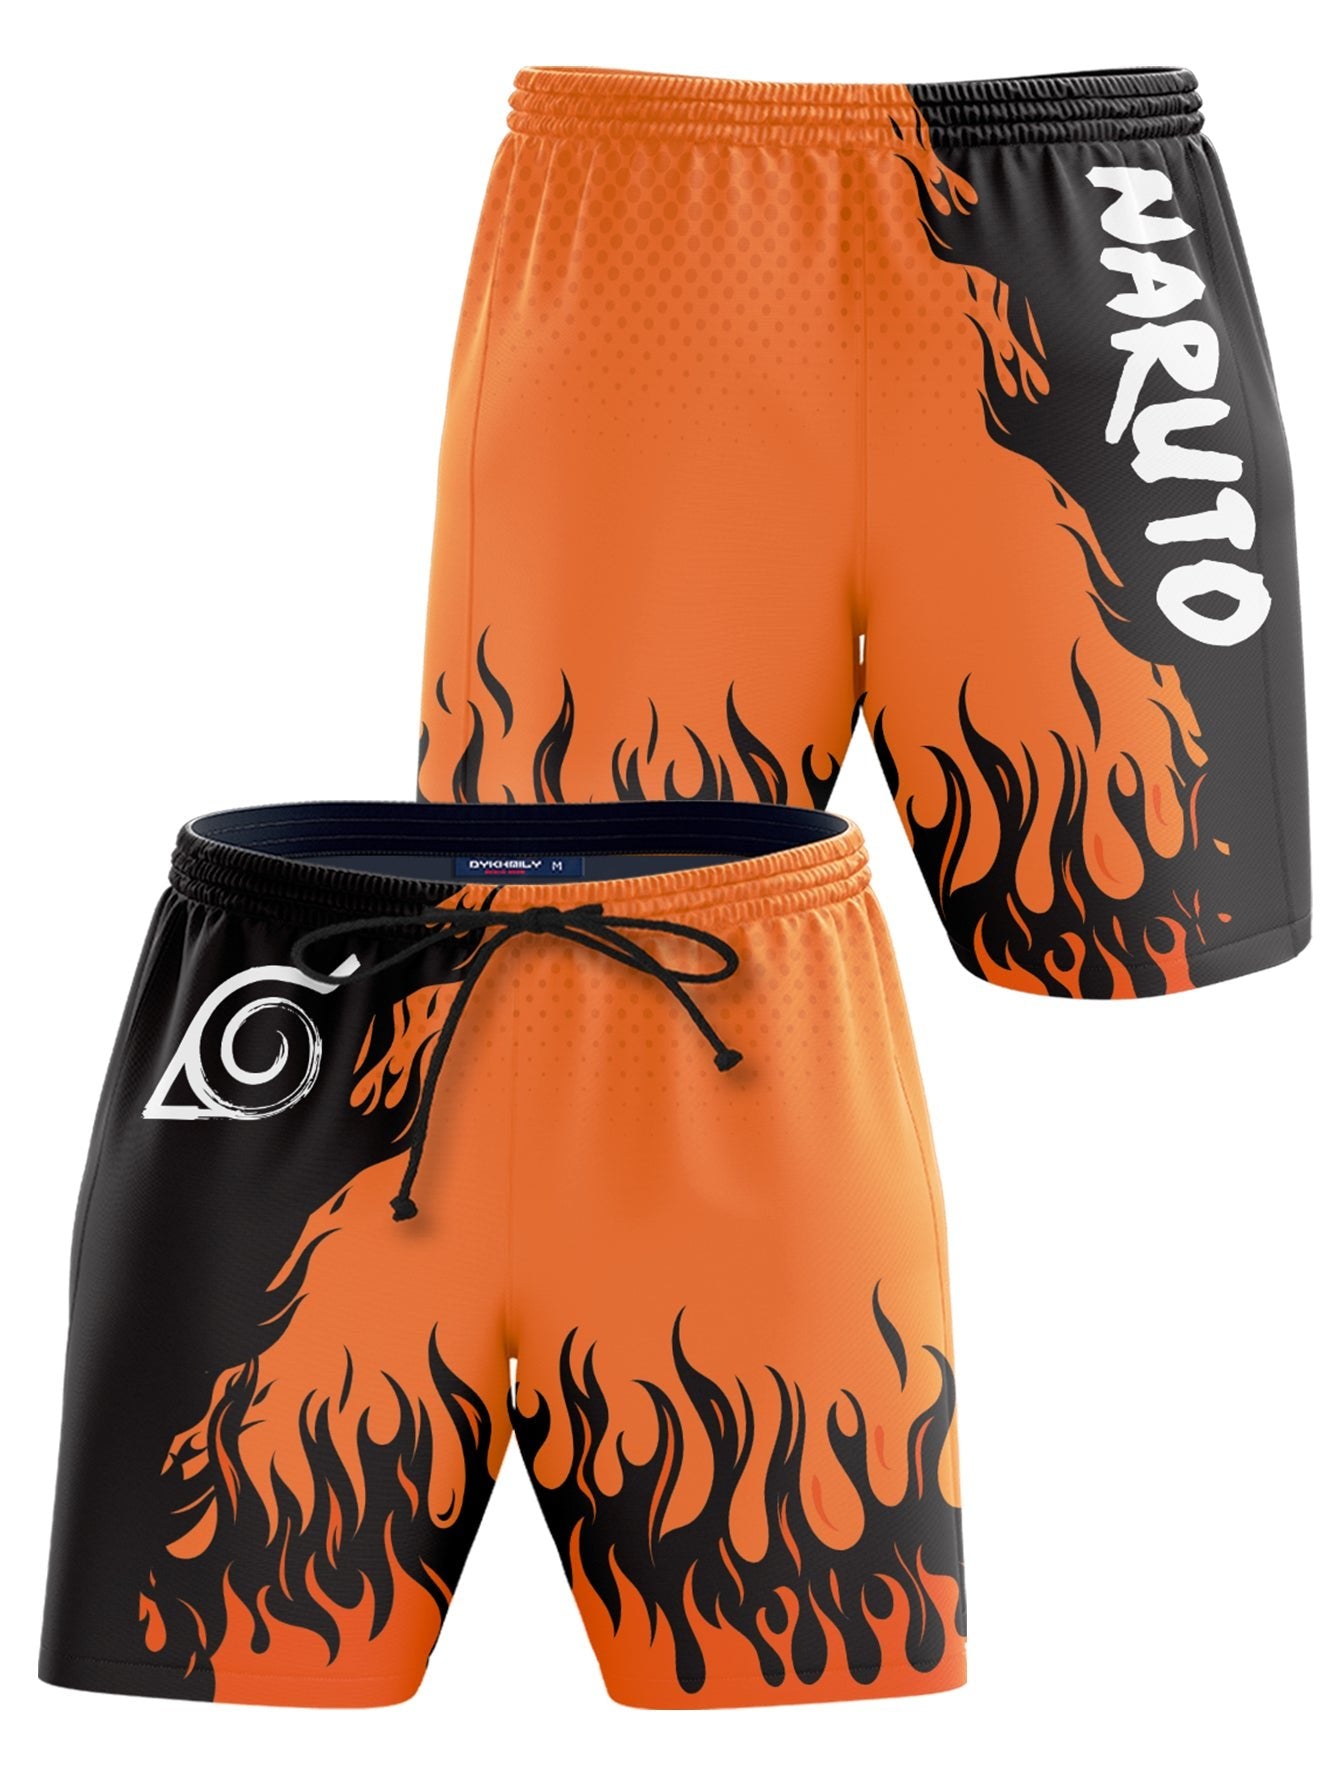 Fandomaniax - Naruto's Fire Beach Shorts